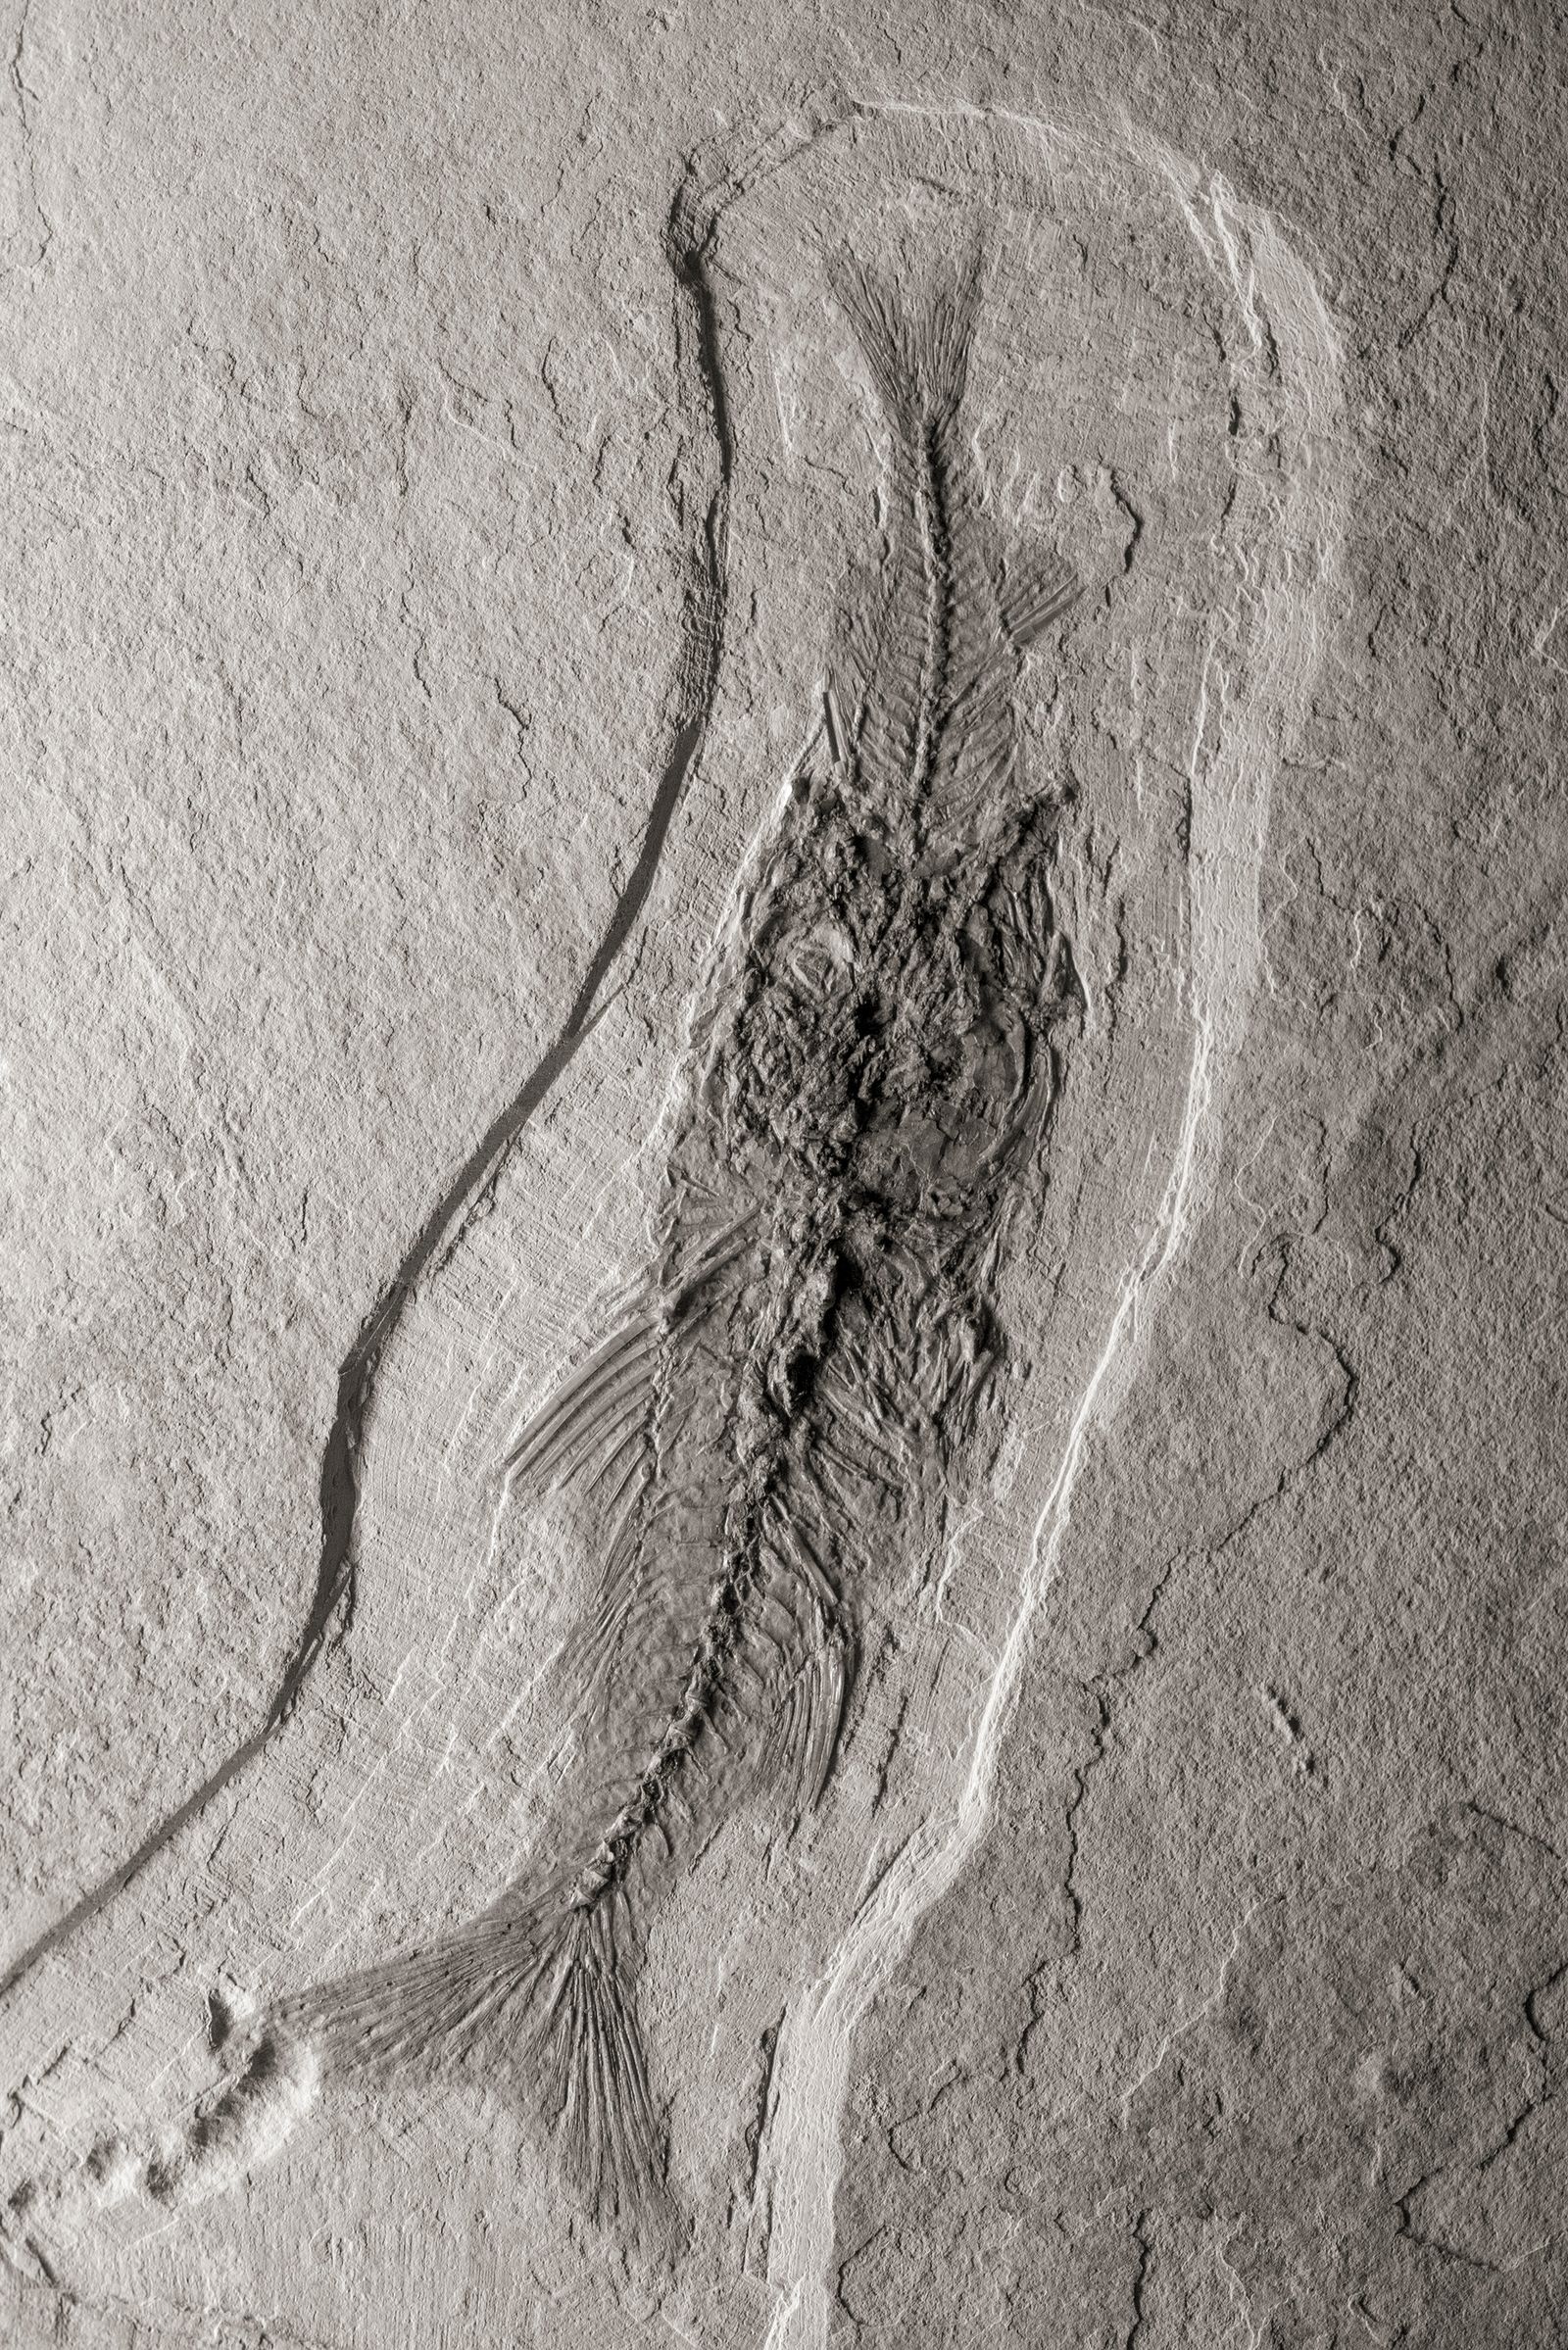 © Alex Llovet - A fossil around 30 million years old